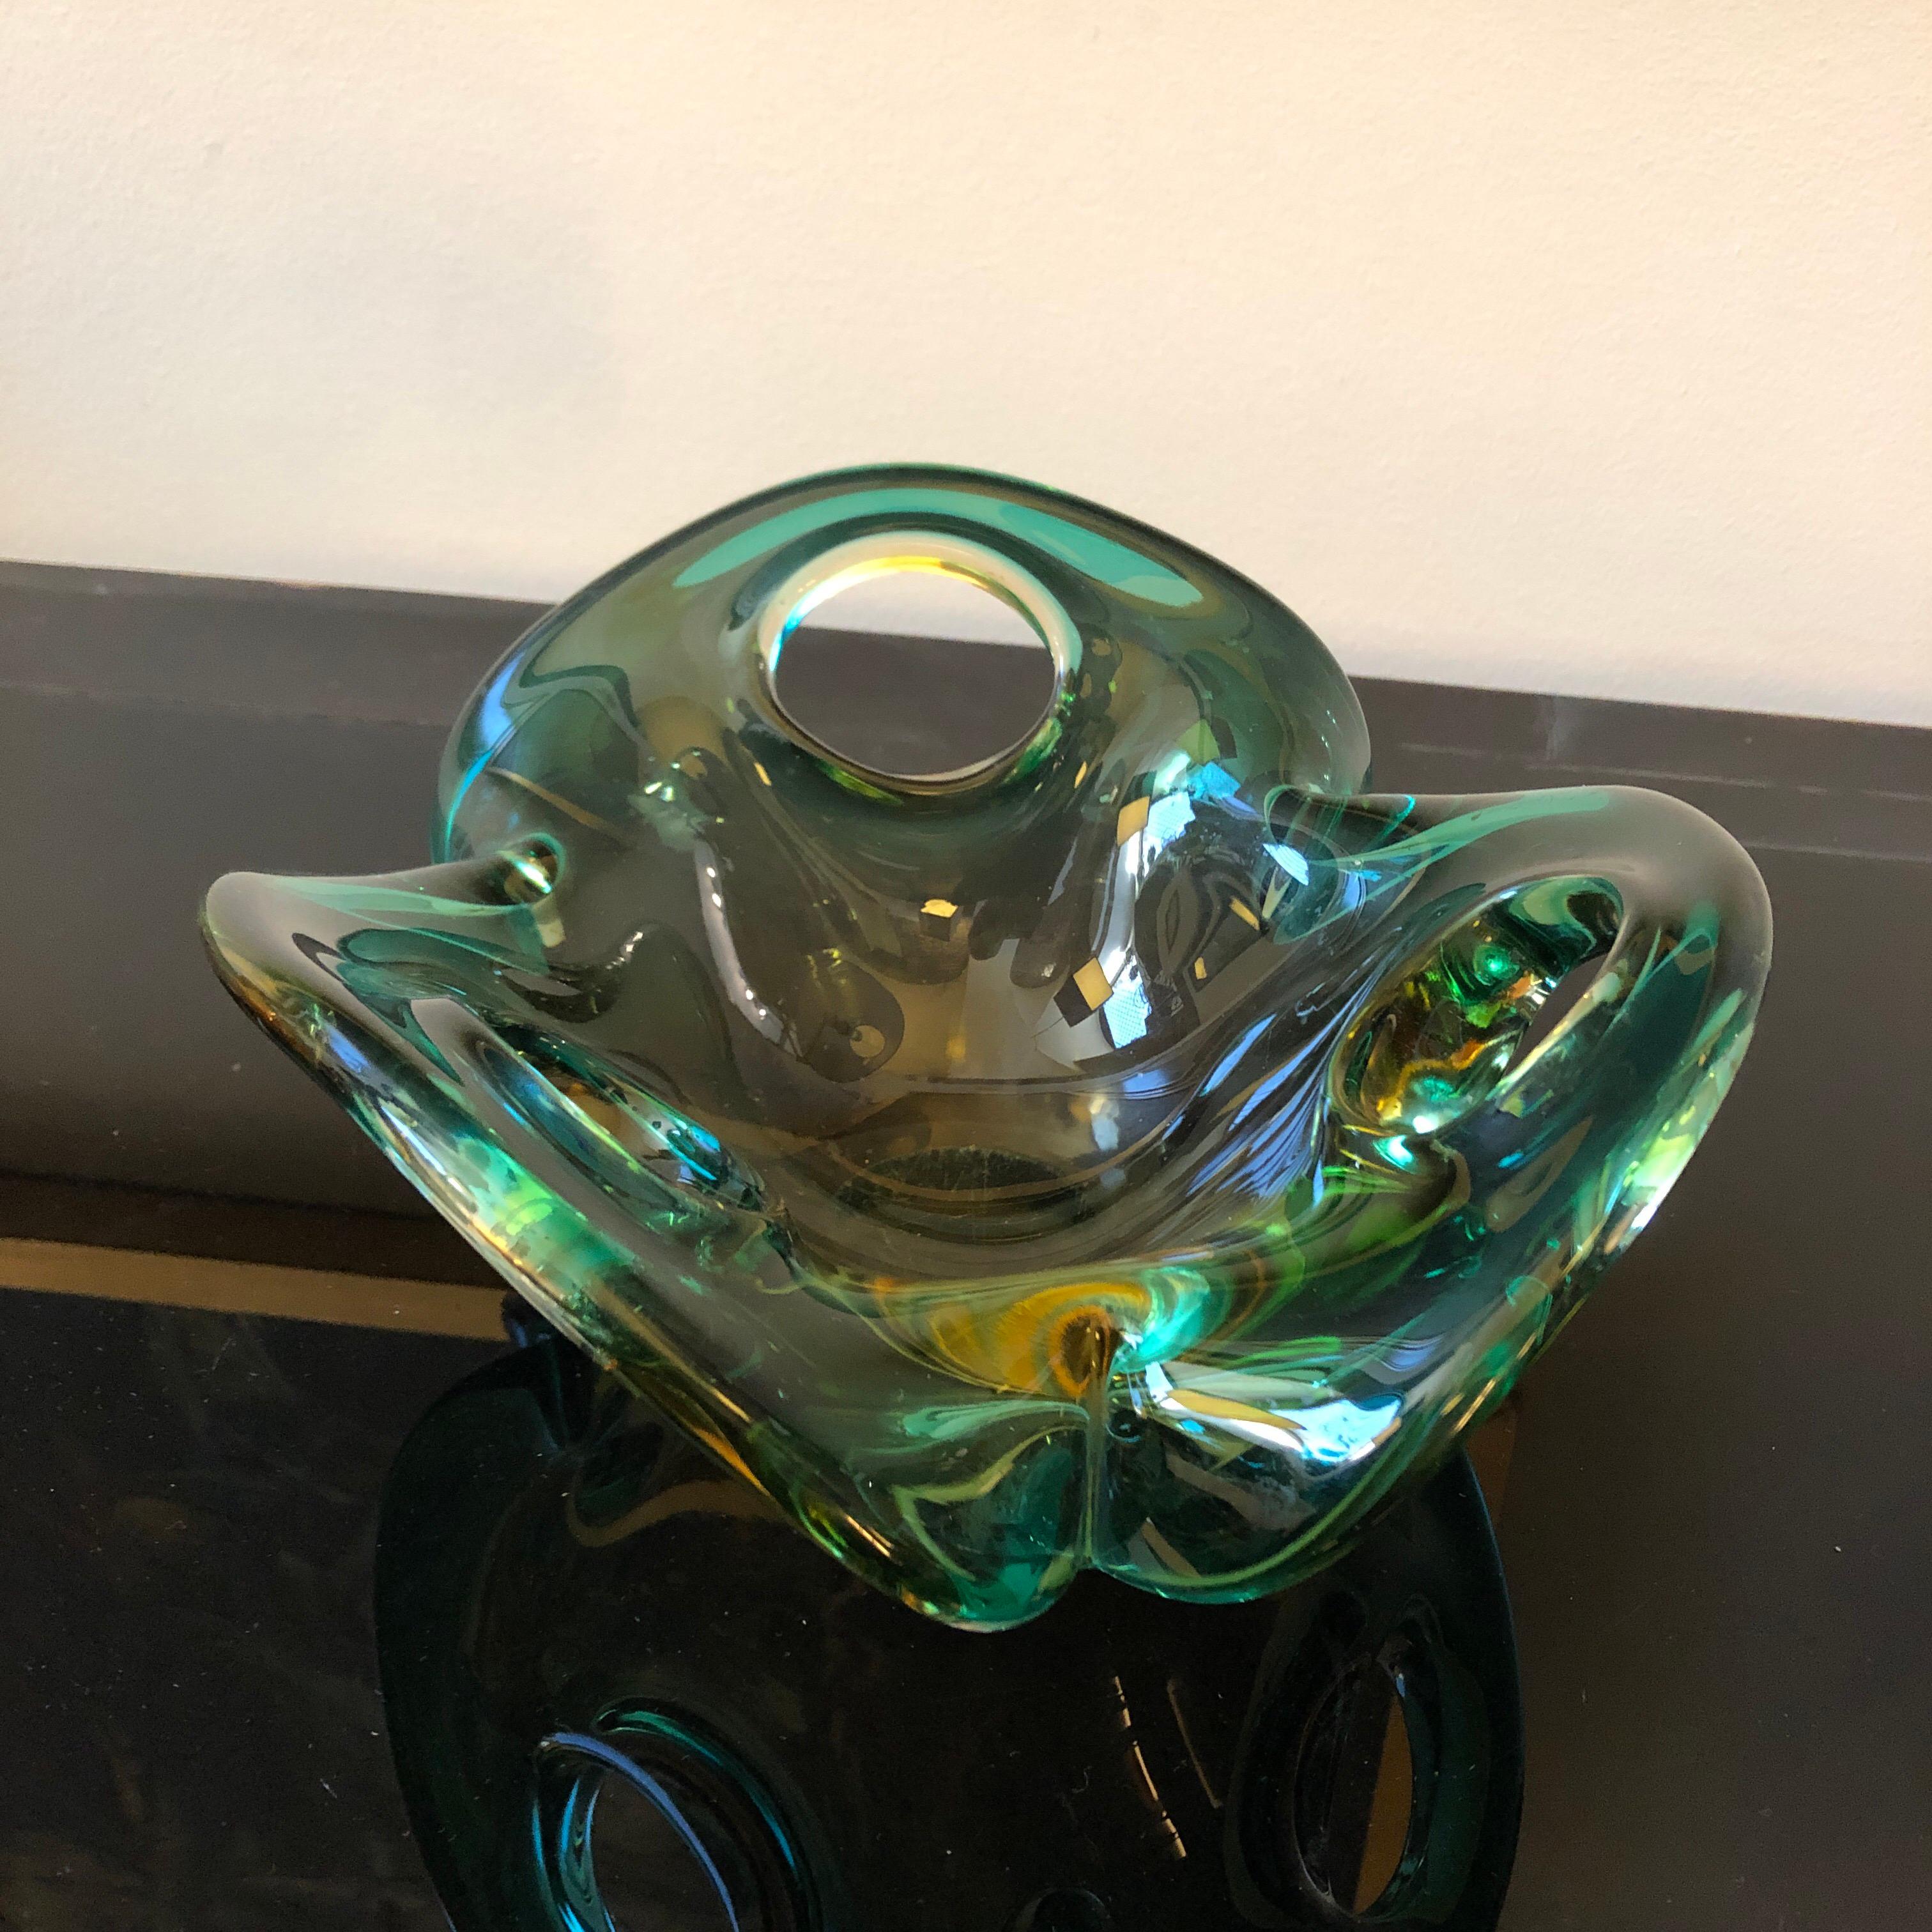 Le bol en verre de Murano des années 1970 de Seguso est un exemple stupéfiant de l'art verrier italien et de la technique emblématique du Sommerso. Créé par les célèbres verriers Seguso, ce bol capture l'essence du design moderne du milieu du siècle